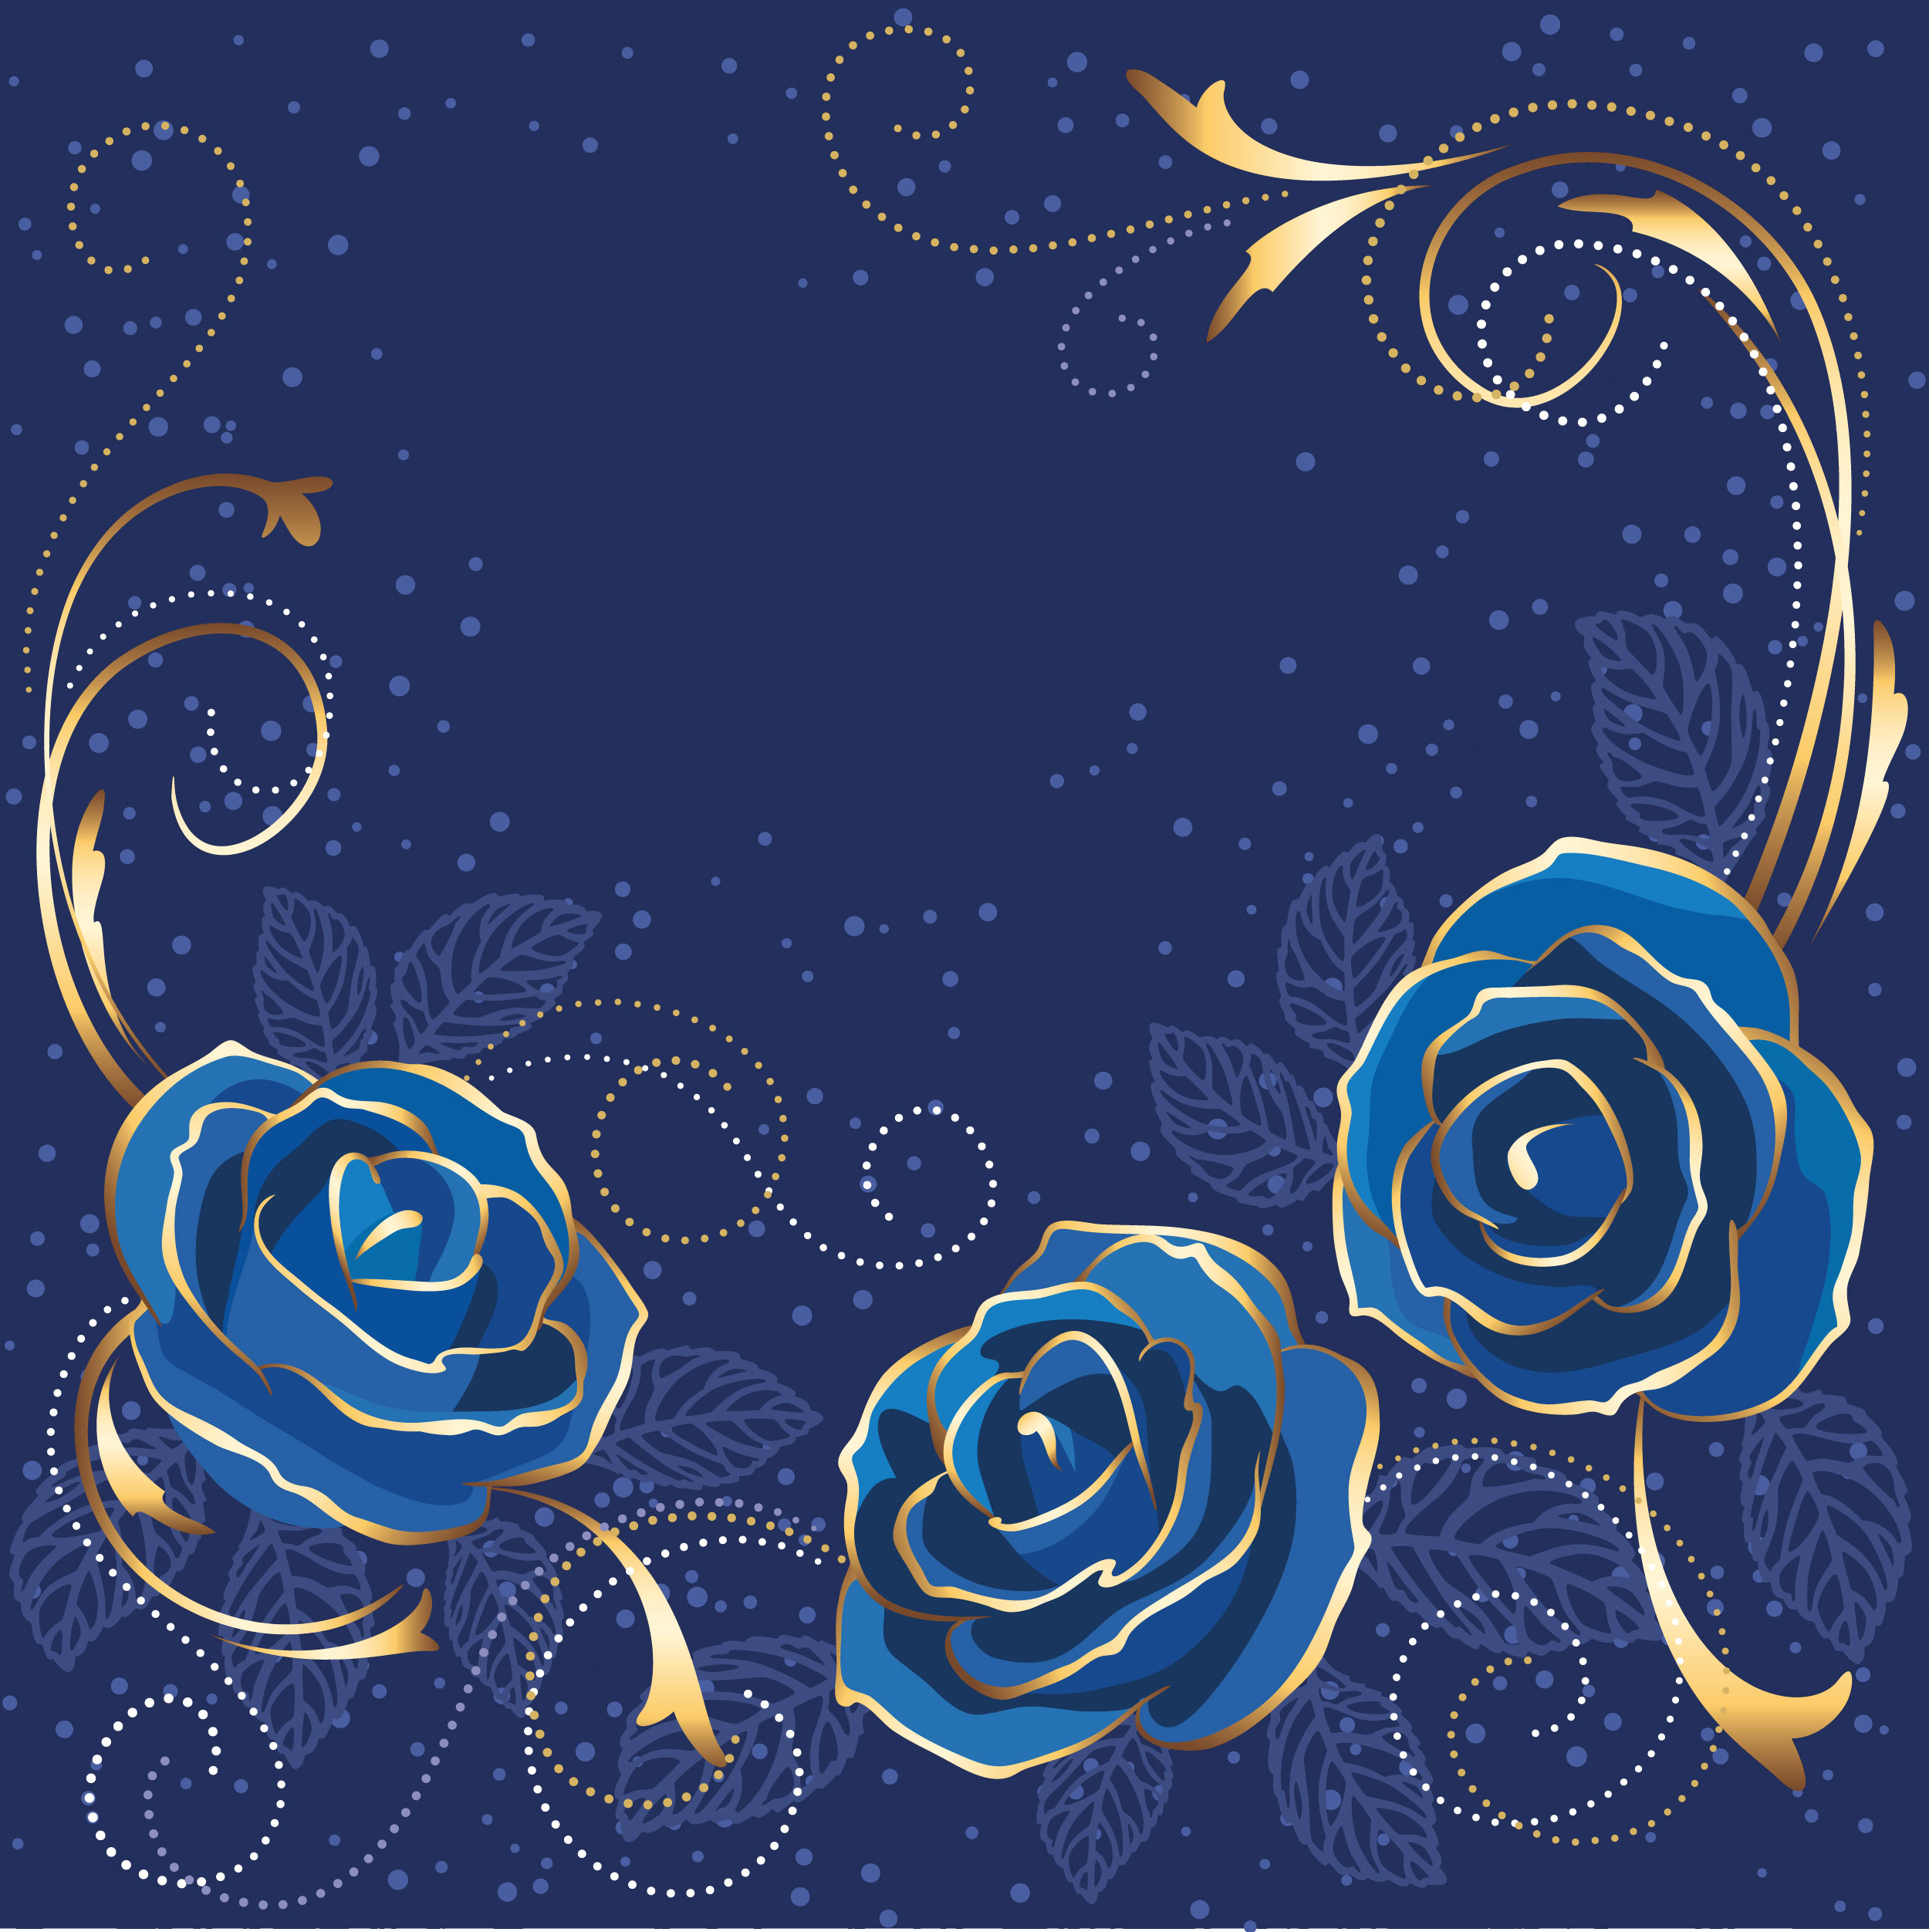 青い花のイラスト フリー素材 背景 壁紙no 352 青いバラ 金色の葉